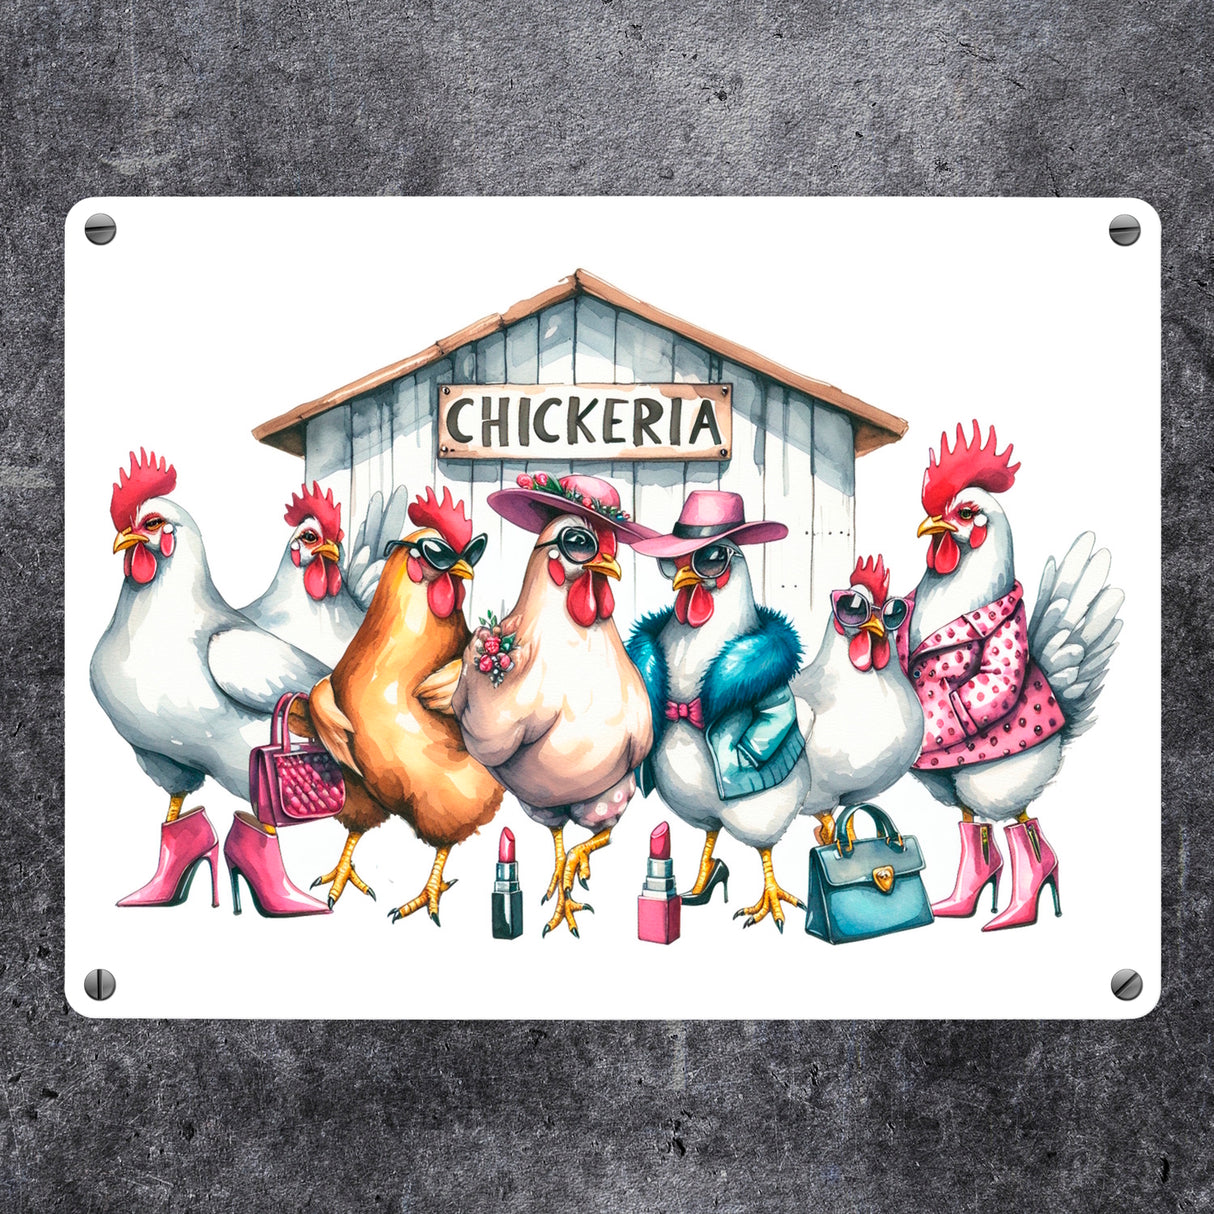 Modische Hühner am Hühnerstall Metallschild in 15x20 cm mit Spruch Chickeria